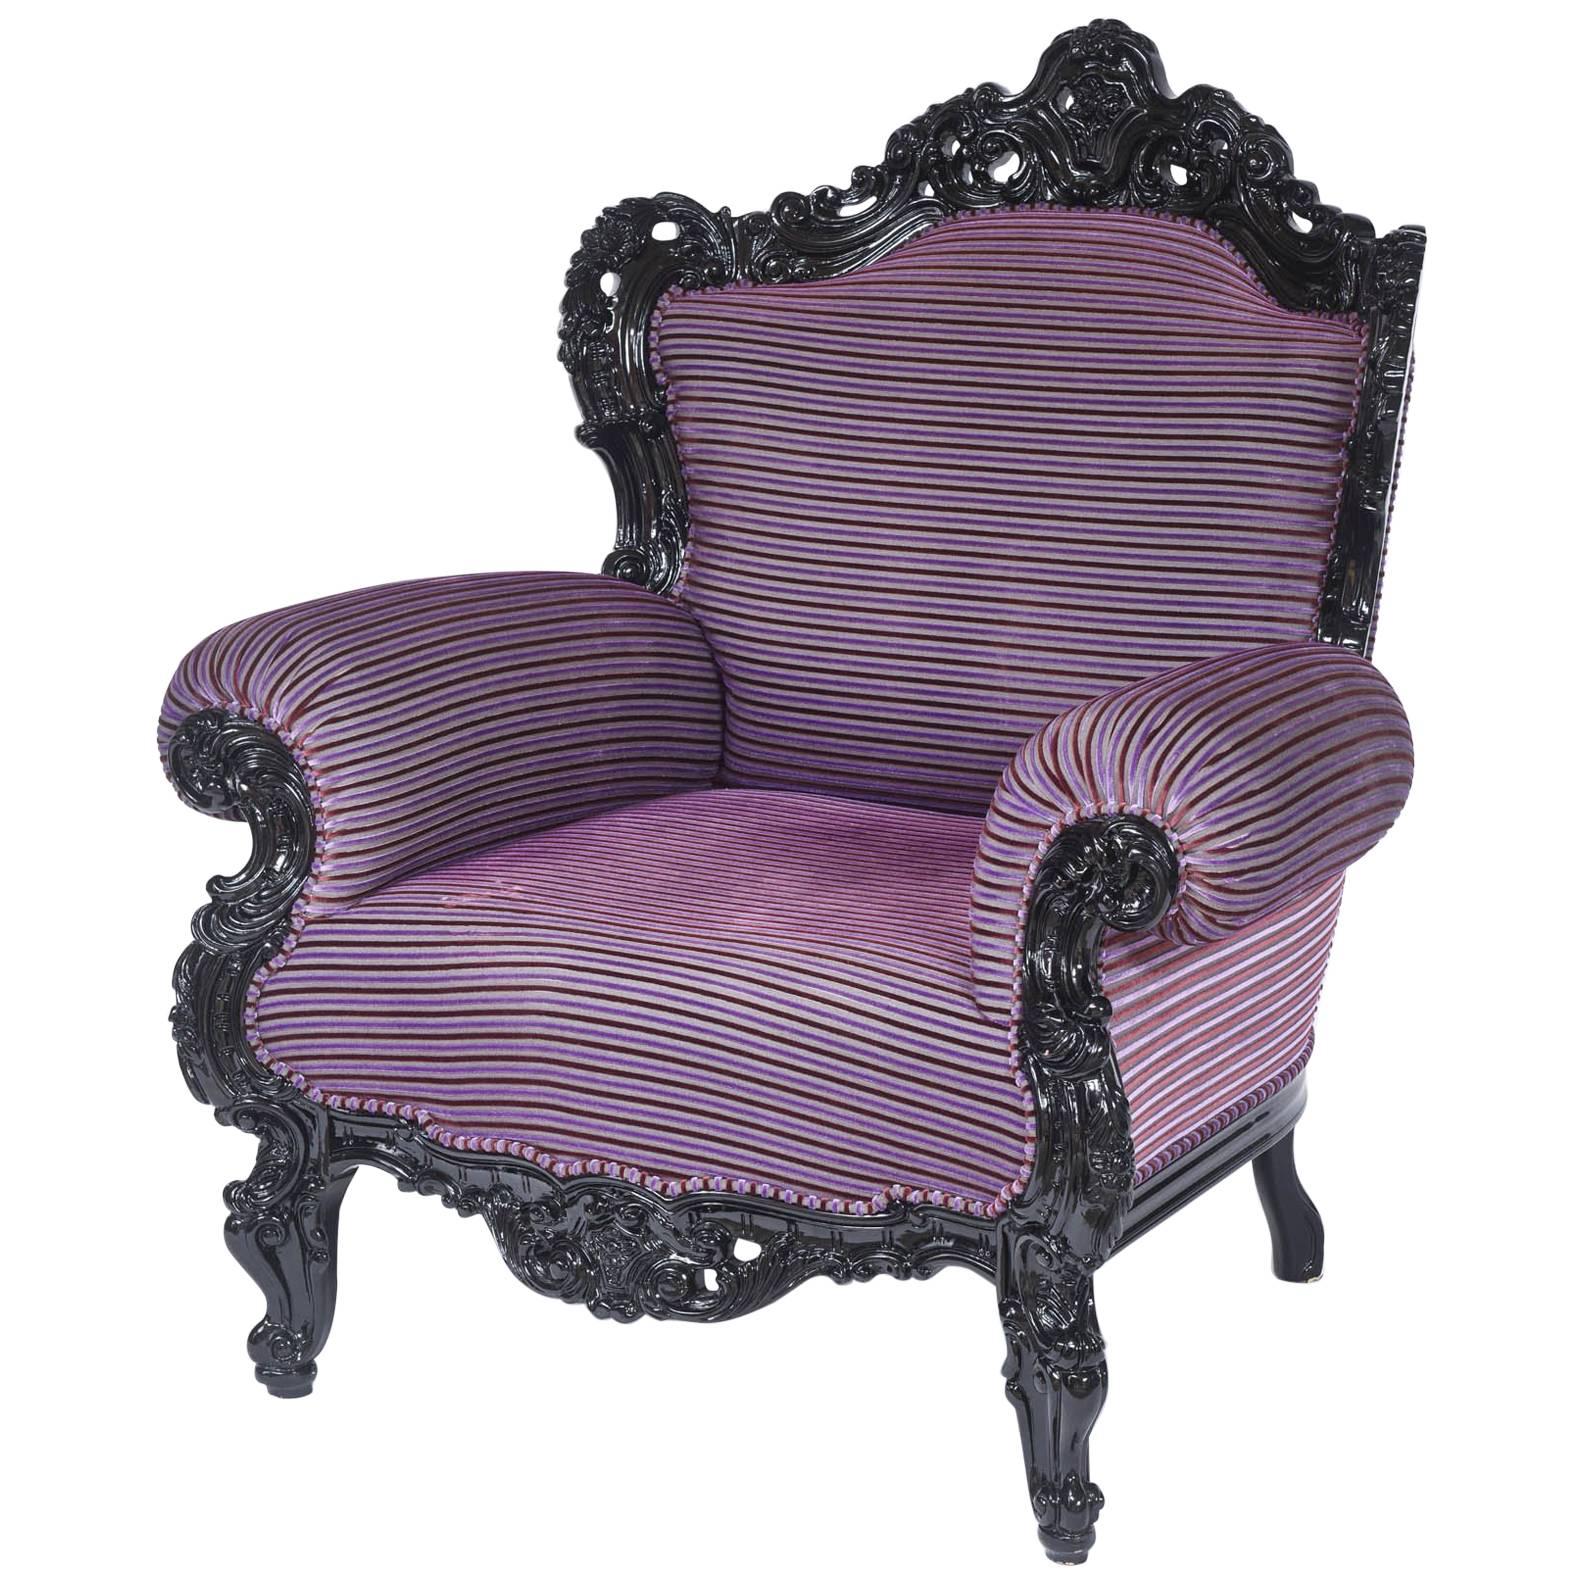 Maßgefertigter übergroßer Carlo Rampazzi-Sessel, schwarz mit maßgefertigter lila Polsterung